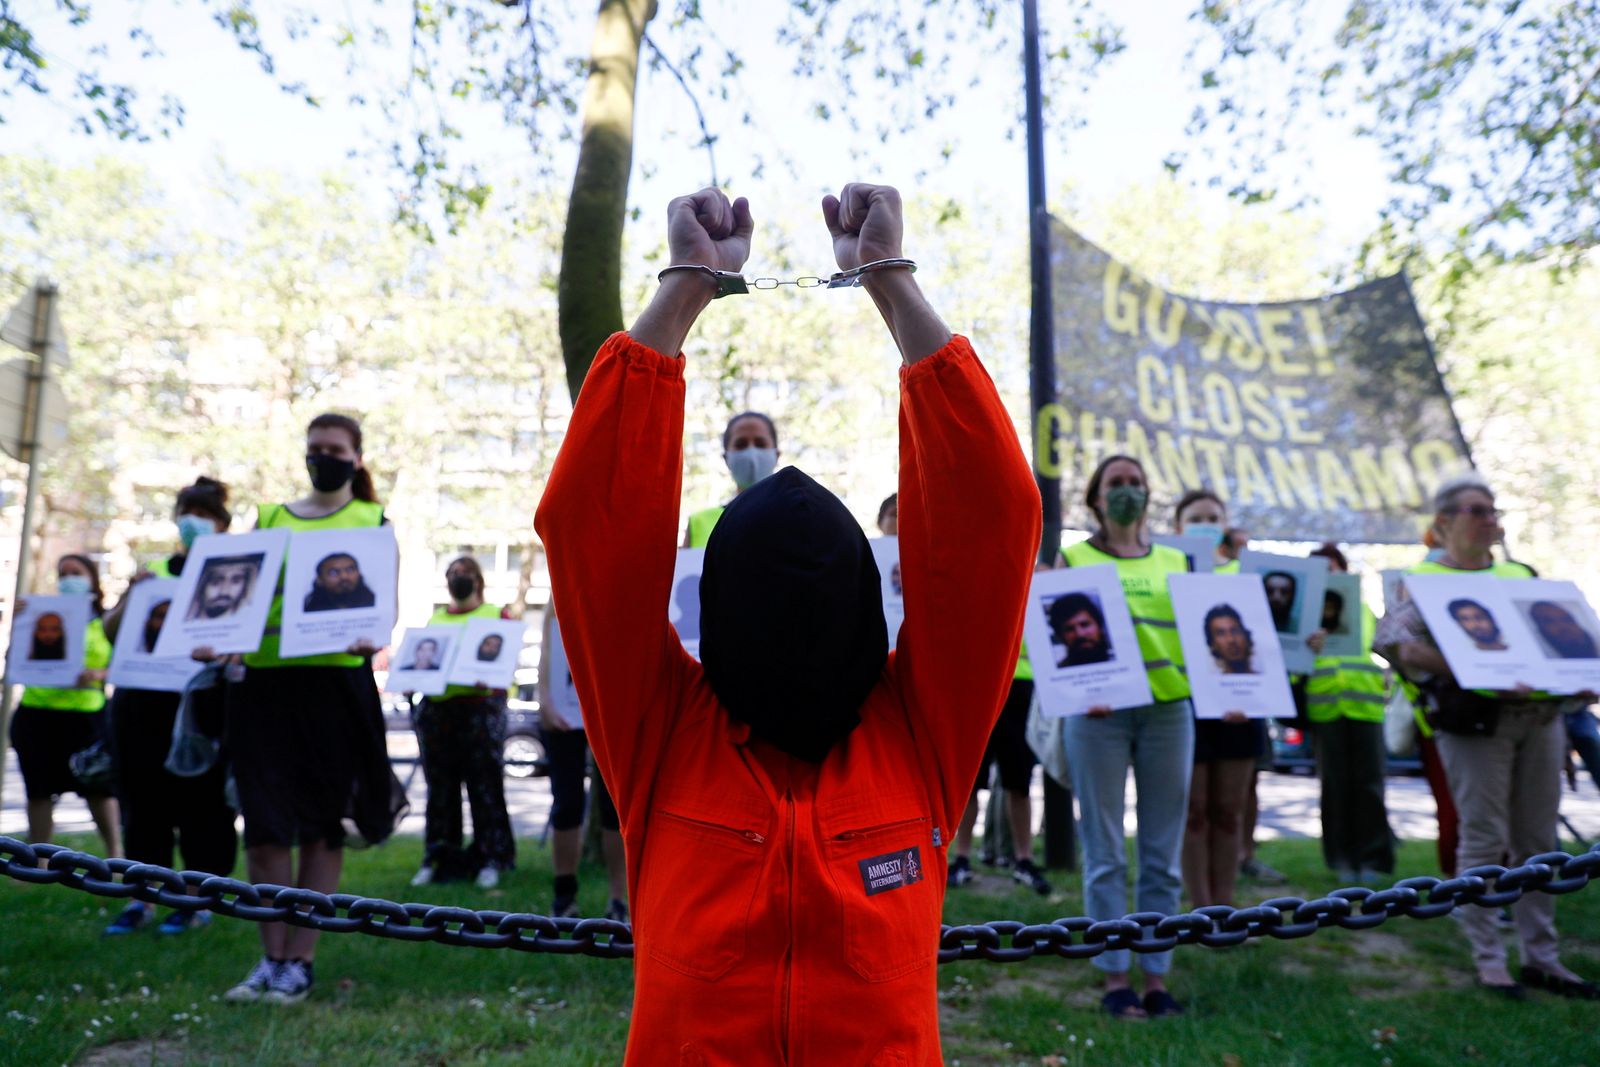 نشطاء يشاركون في احتجاج للمطالبة بإغلاق سجن غوانتانامو، خلال قمة الناتو في بروكسل، 14 يونيو 2021 - REUTERS